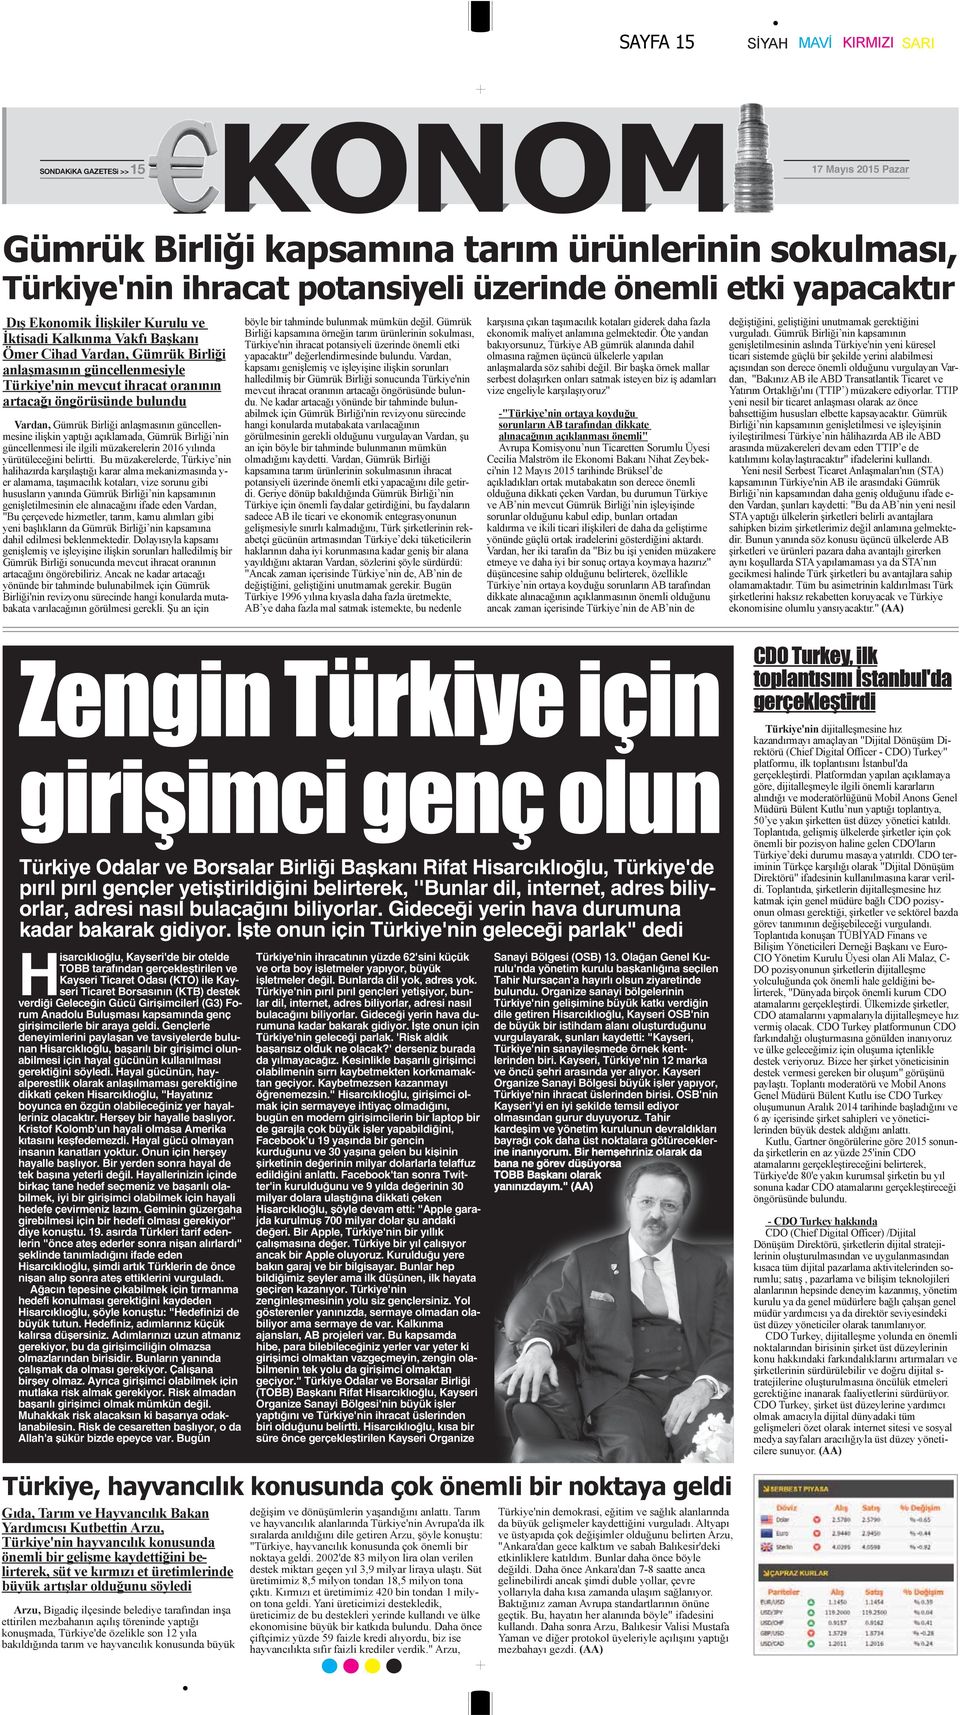 İşte onun için Türkiye'nin geleceği parlak" dedi Hisarcıklıoğlu, Kayseri'de bir otelde TOBB tarafından gerçekleştirilen ve Kayseri Ticaret Odası (KTO) ile Kayseri Ticaret Borsasının (KTB) destek